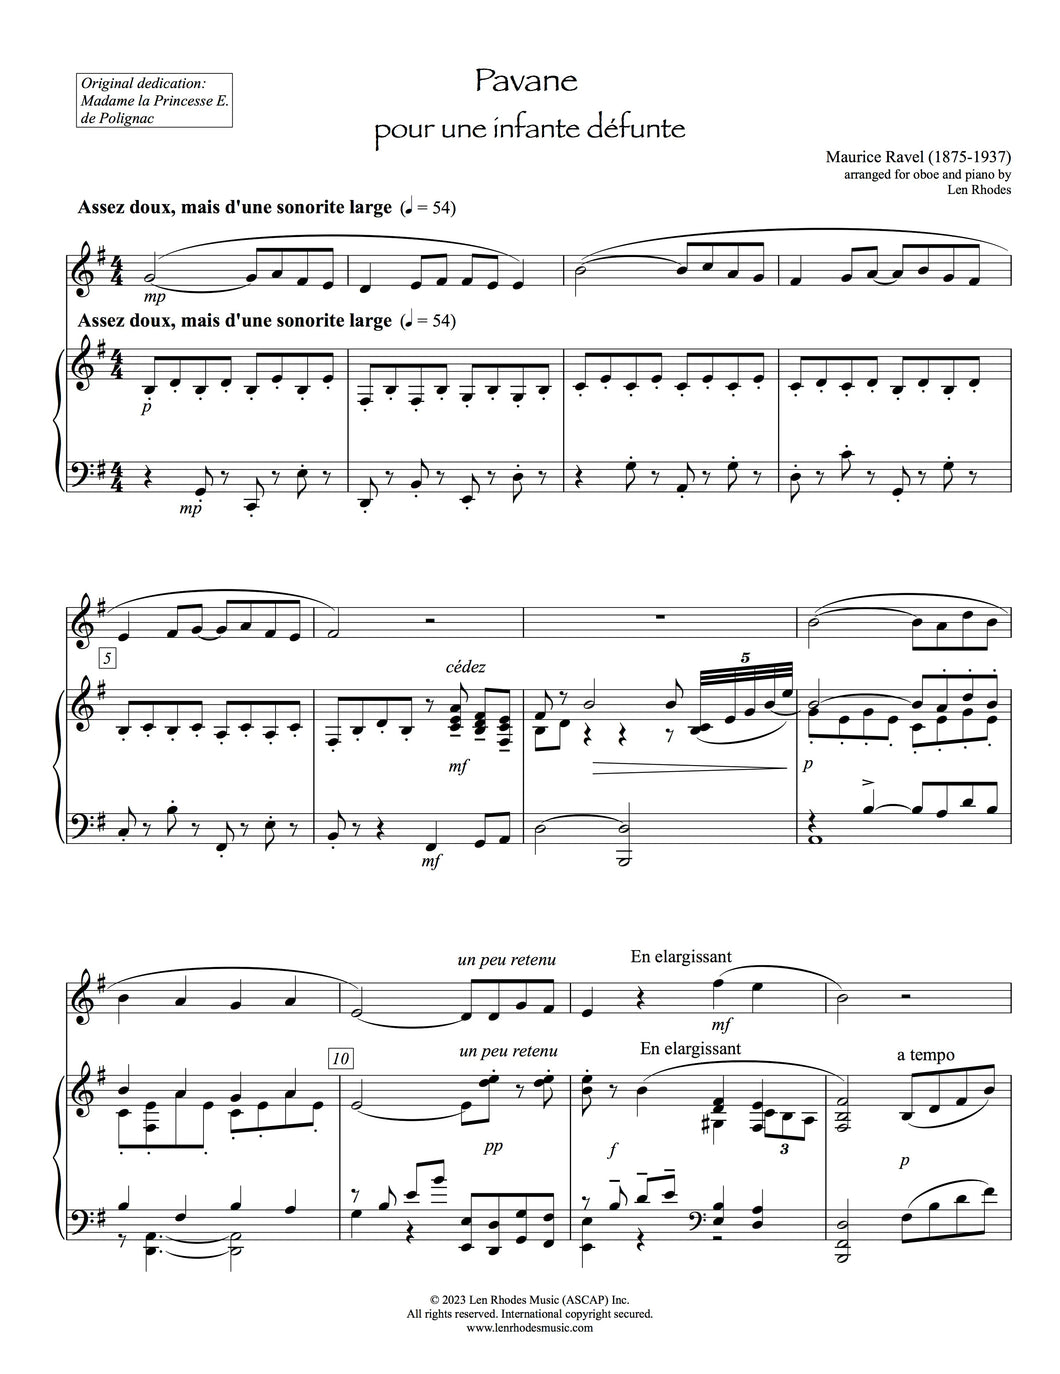 Pavane pour une infante défunte, Ravel - Oboe and Piano